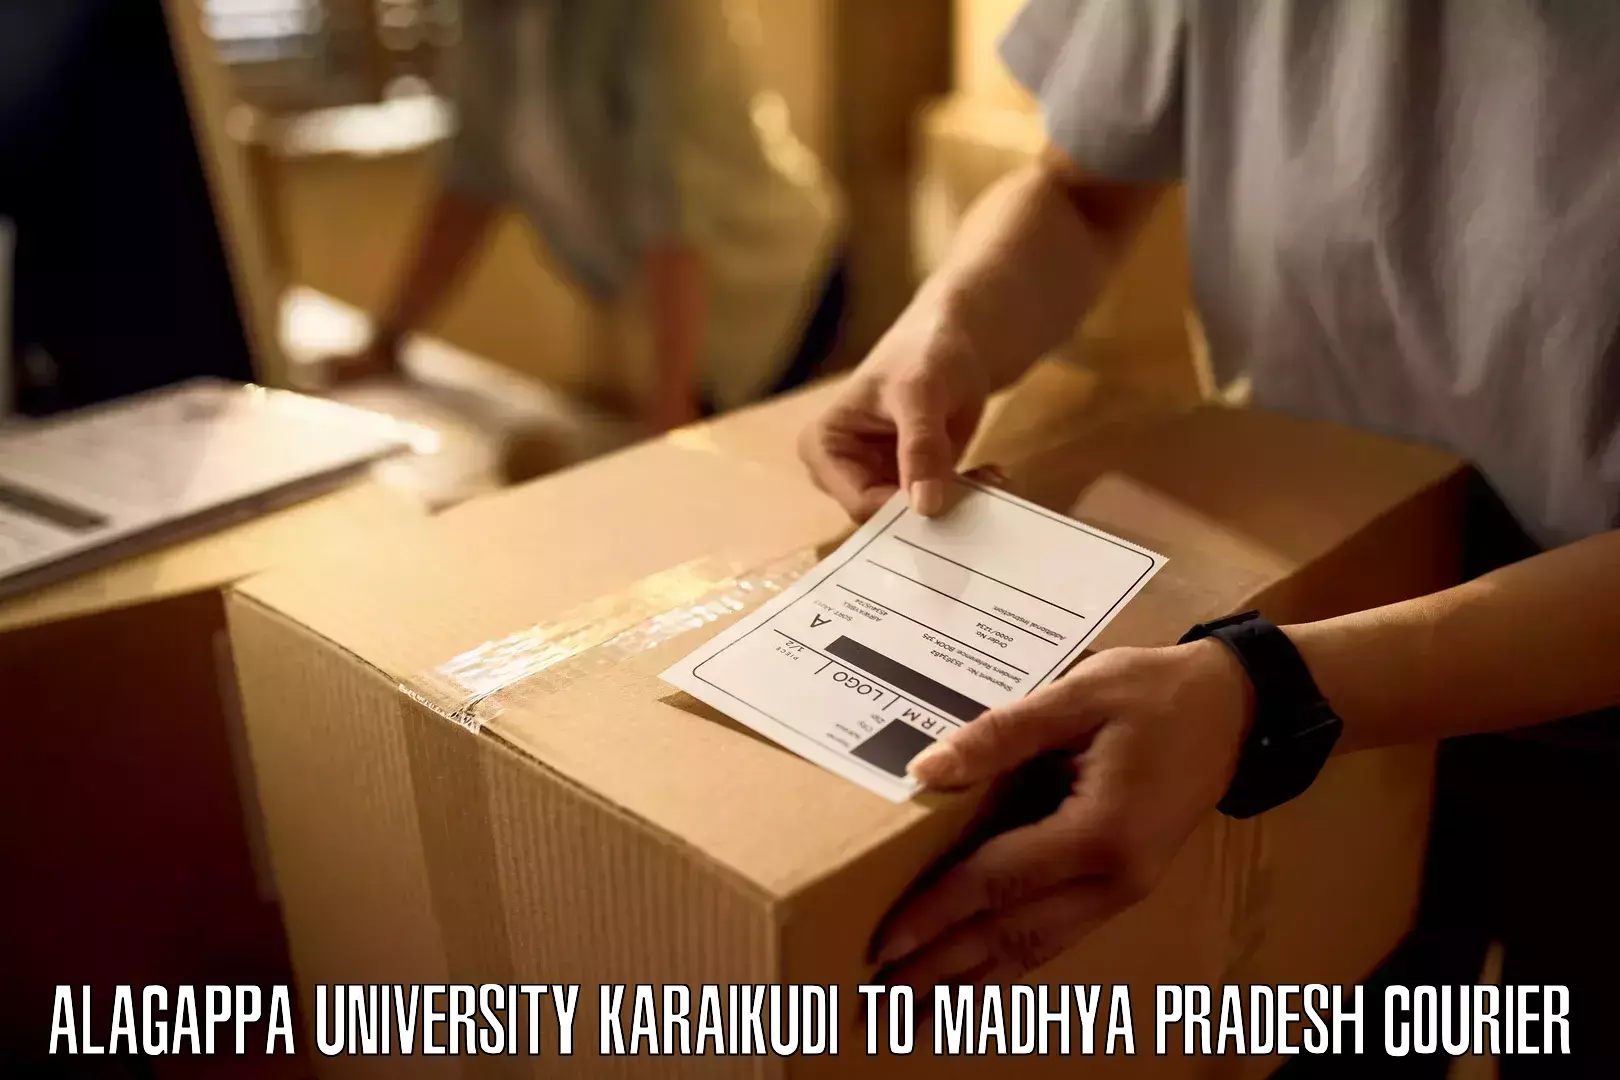 Speedy delivery service Alagappa University Karaikudi to Madhya Pradesh